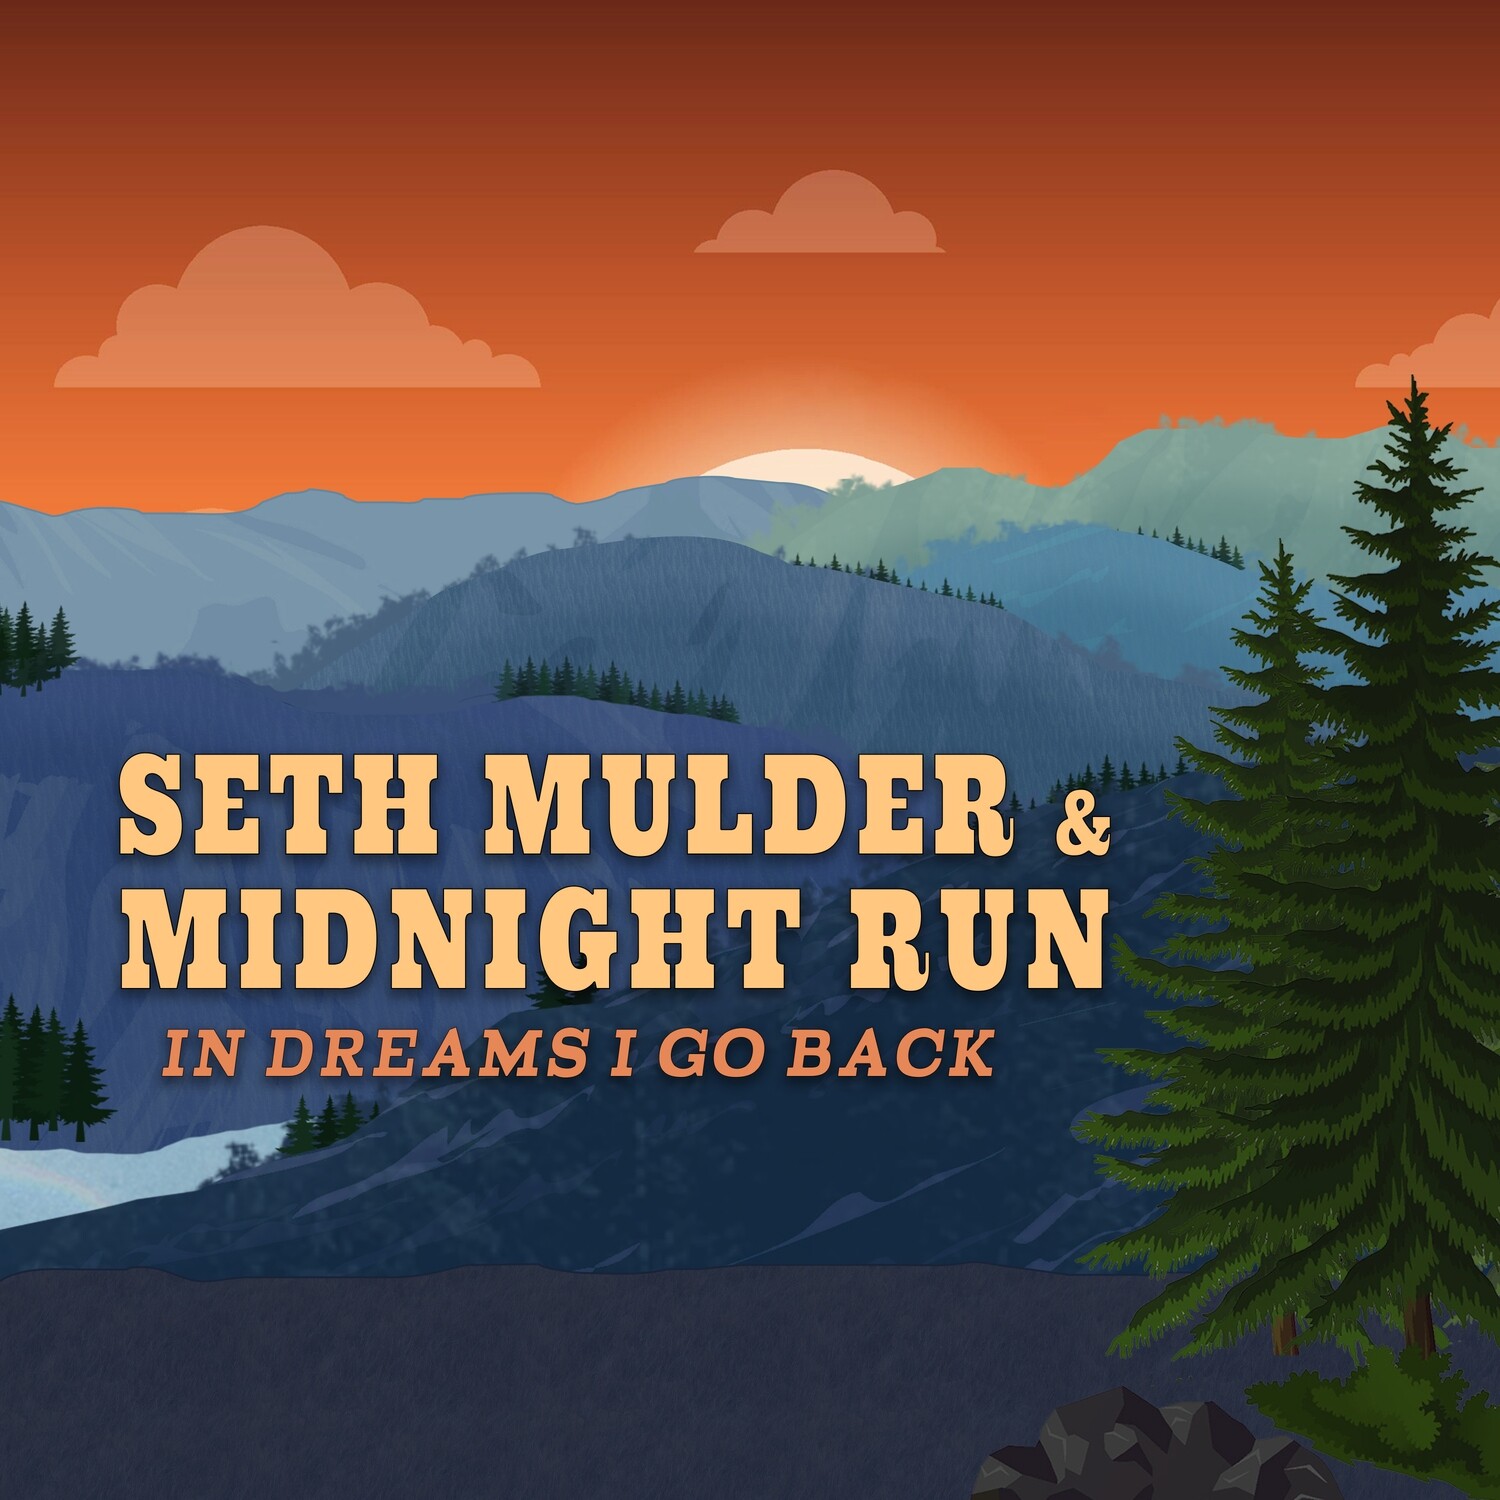 Seth Mulder & Midnight Run - In Dreams I Go Back